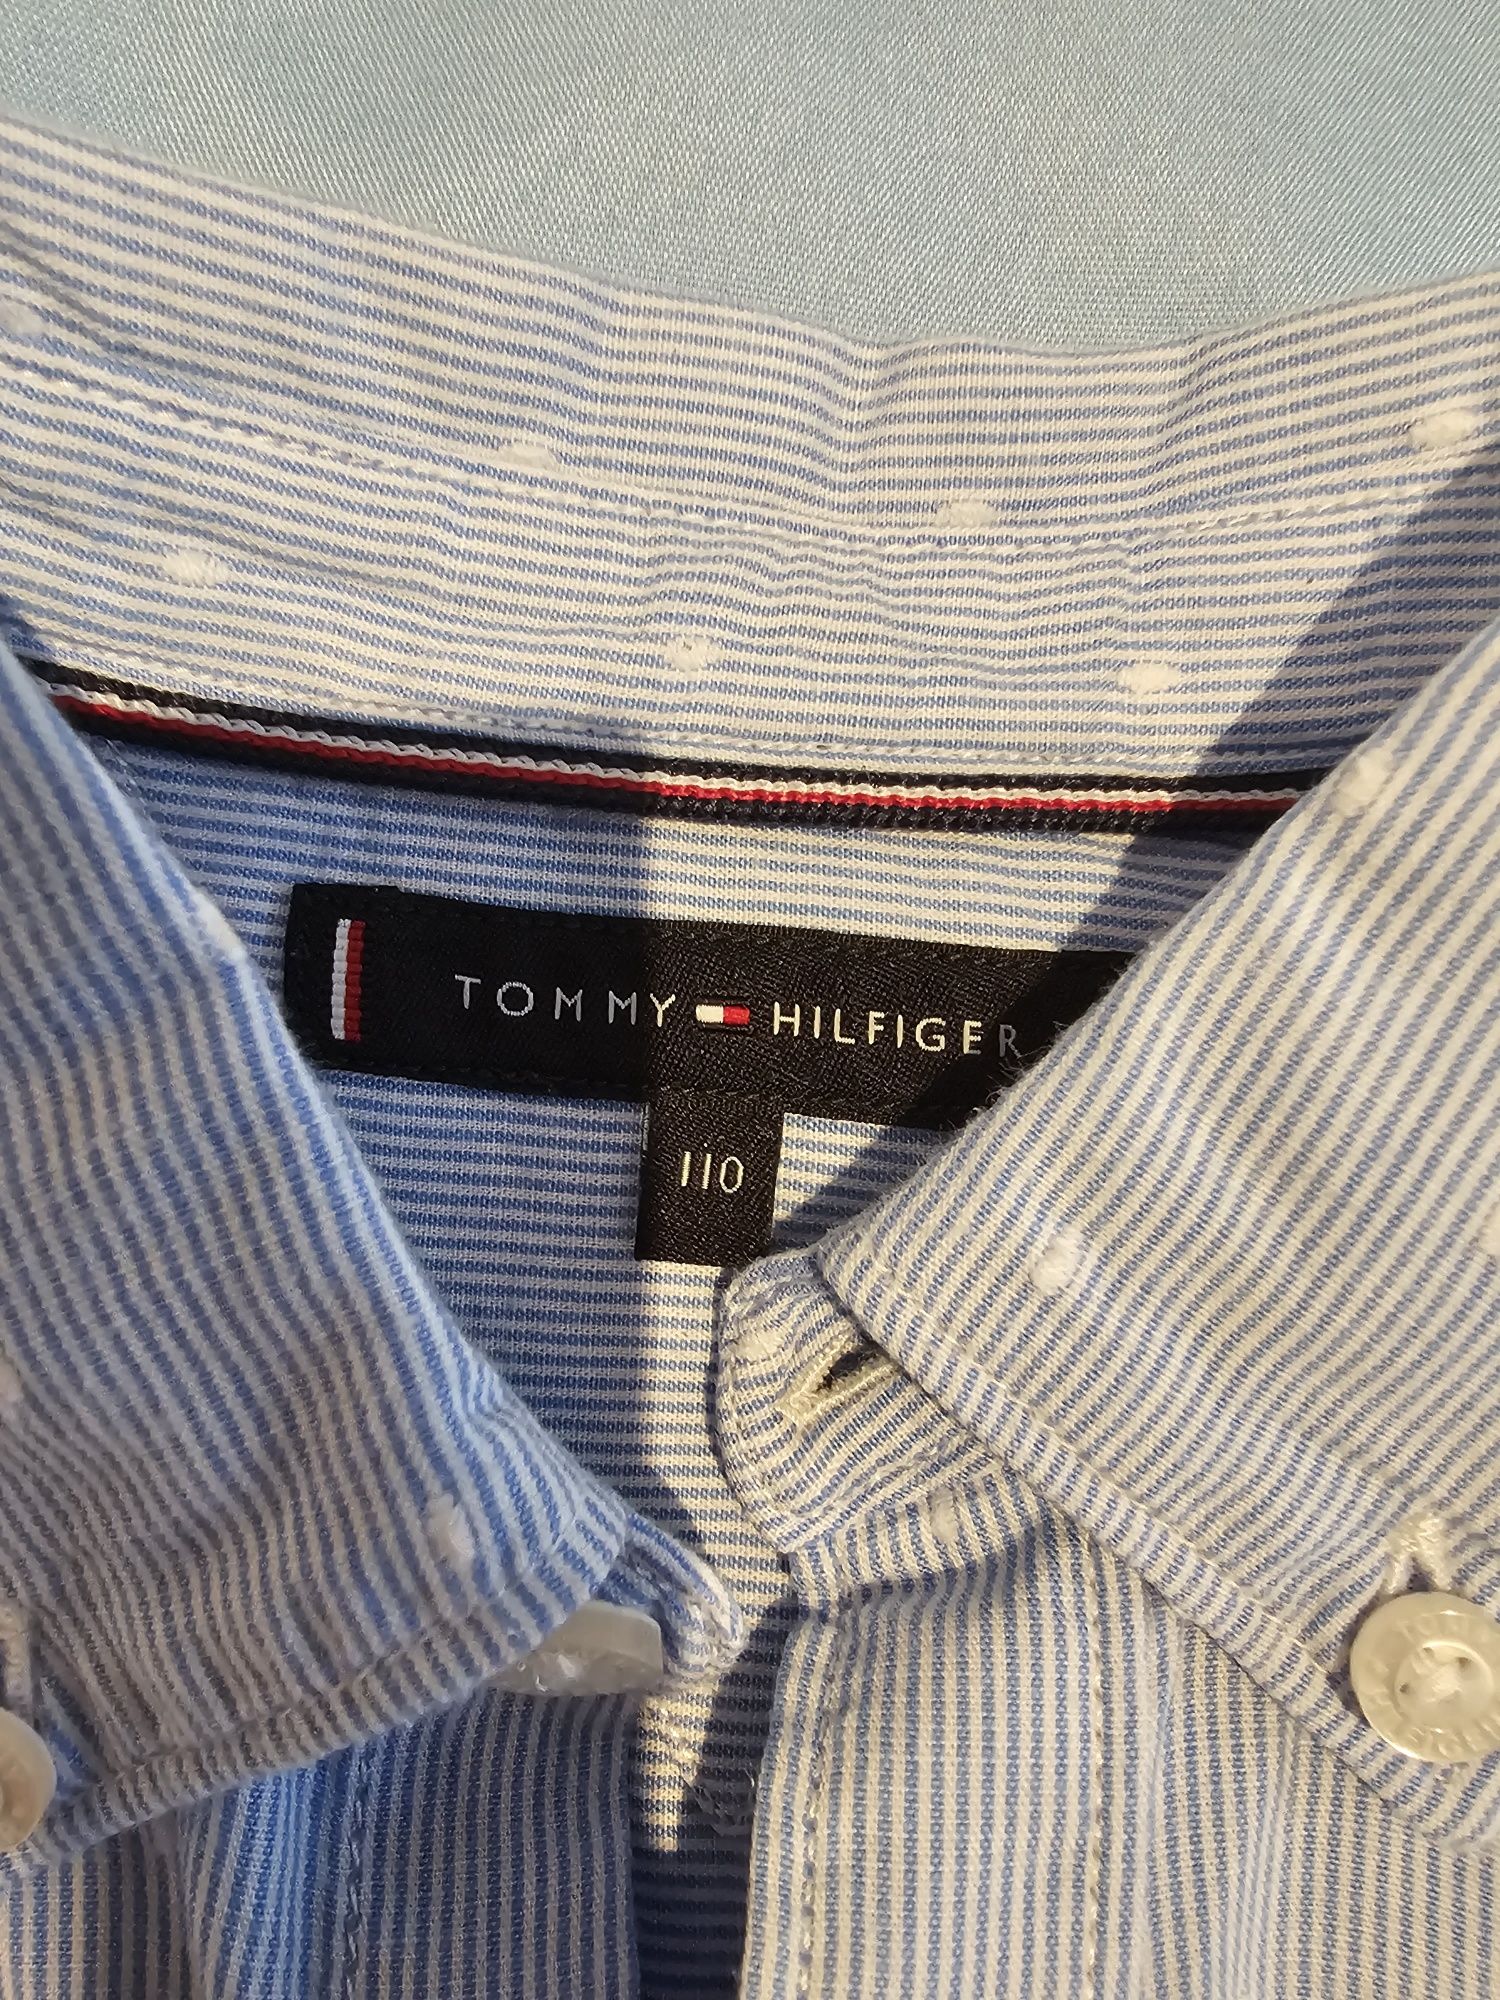 Camisa Tommy Hilfiger como nova 110cm